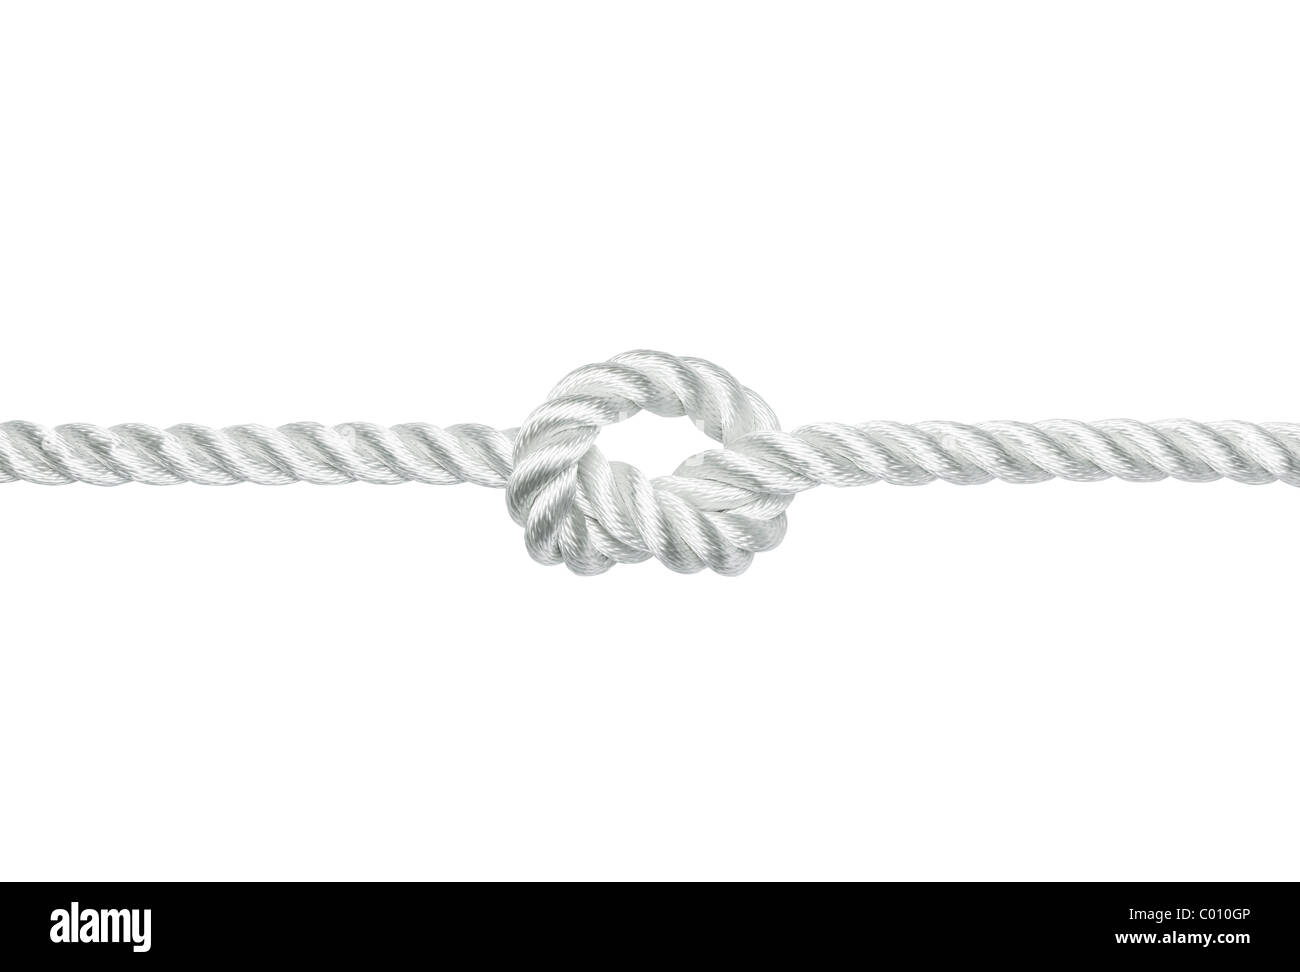 La corde de nylon solide avec un noeud isolated on white Banque D'Images